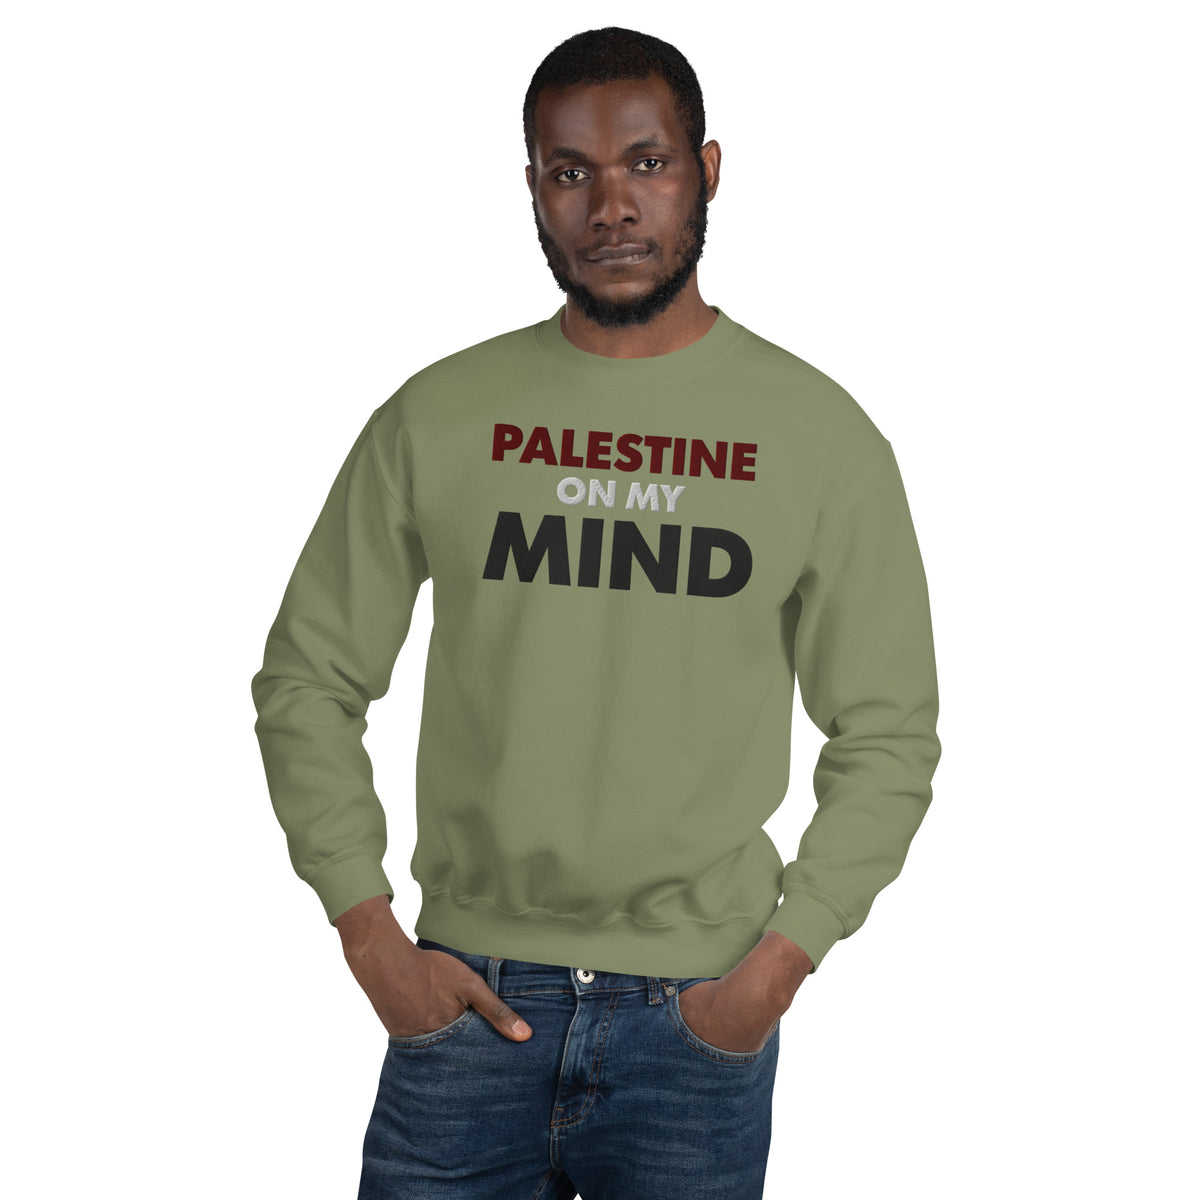 Palestine On My Mind - Sweatshirt